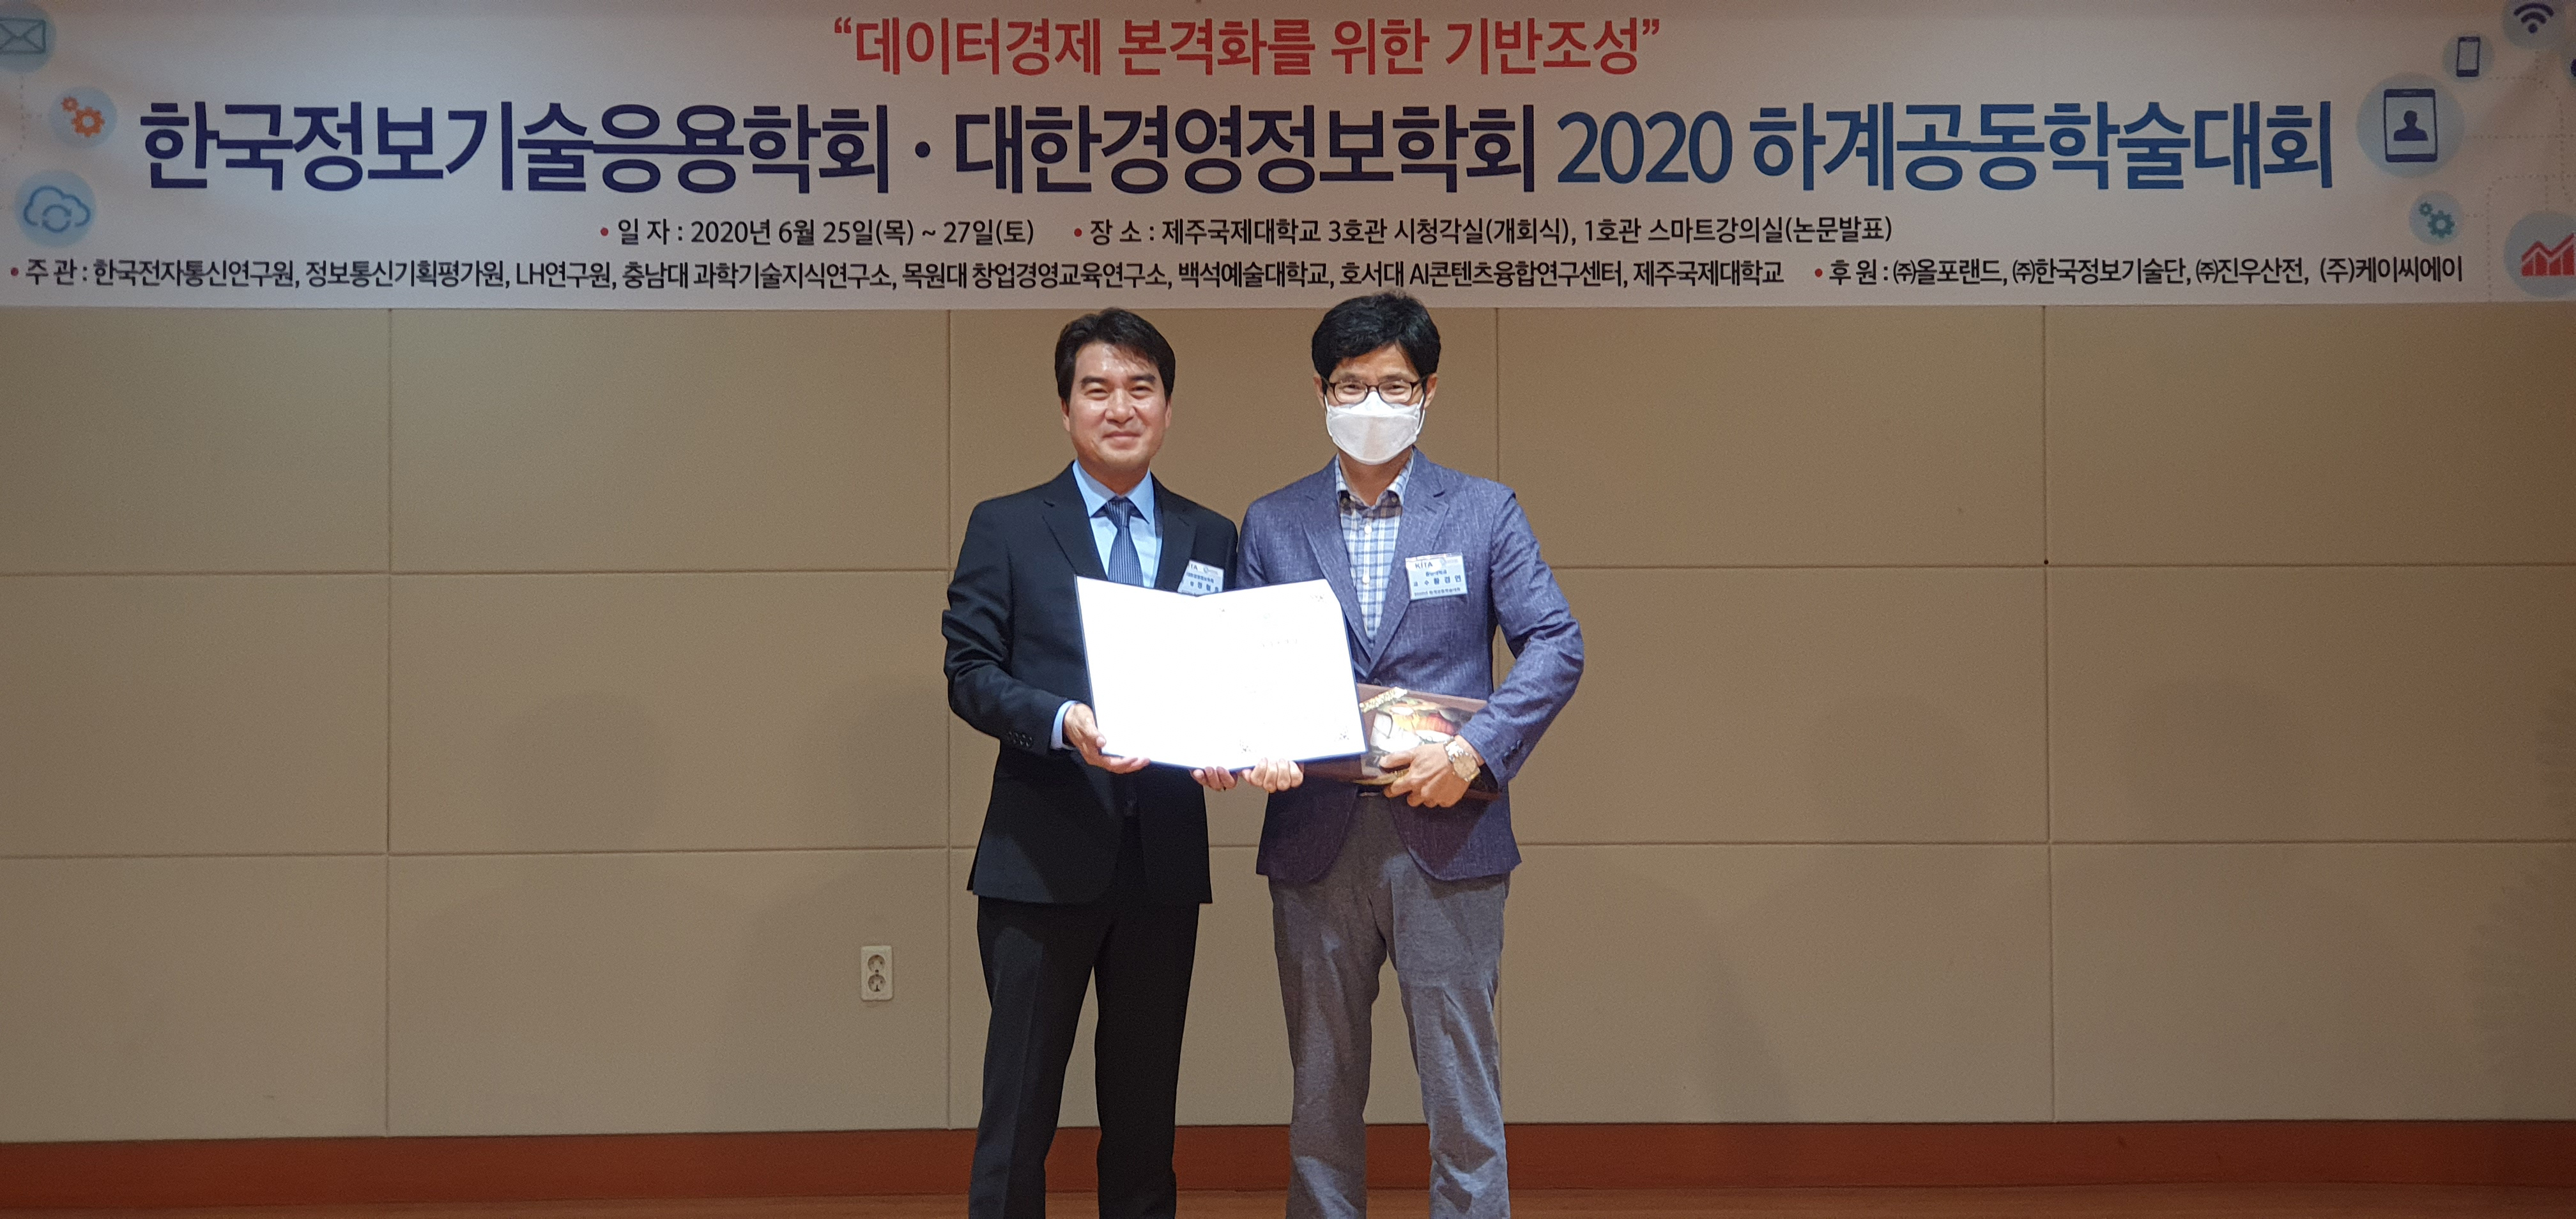 2020년 하계공동학술대회 우수논문 수상자